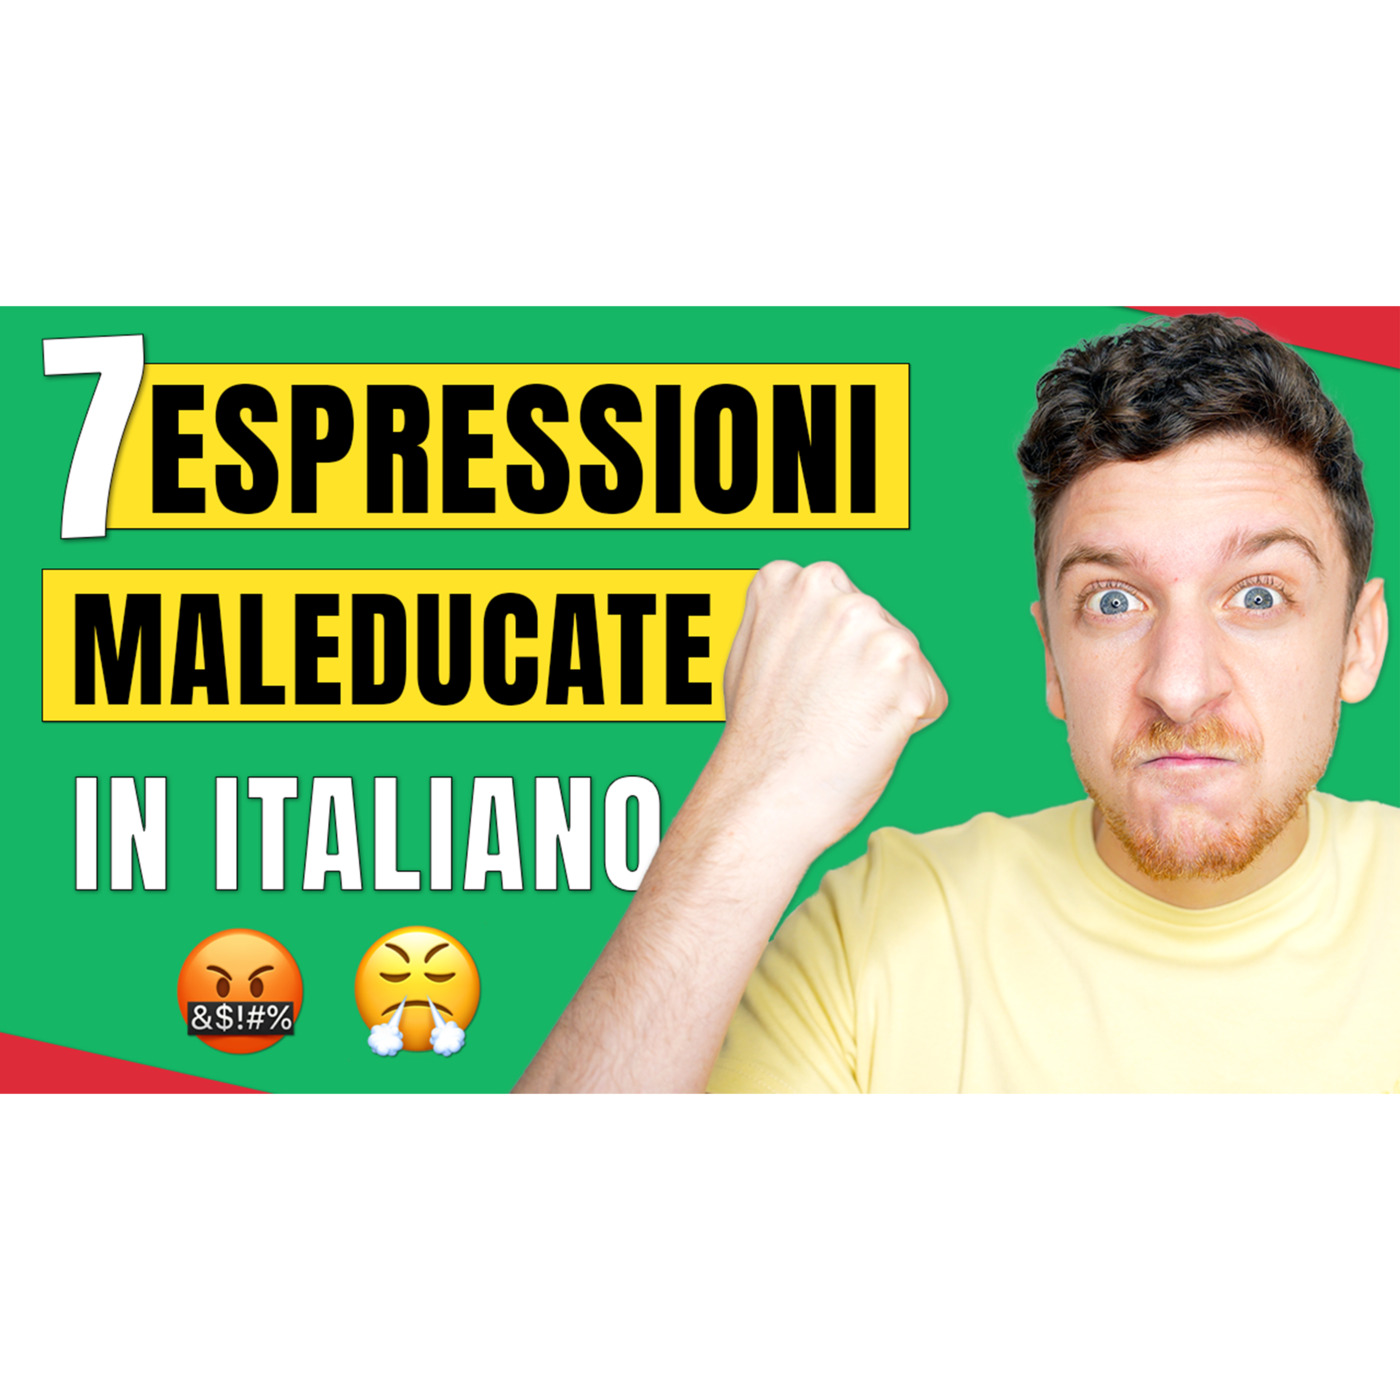 Episode 553: 7 Espressioni Maleducate Che Gli Italiani Usano Spesso | Imparare l’Italiano